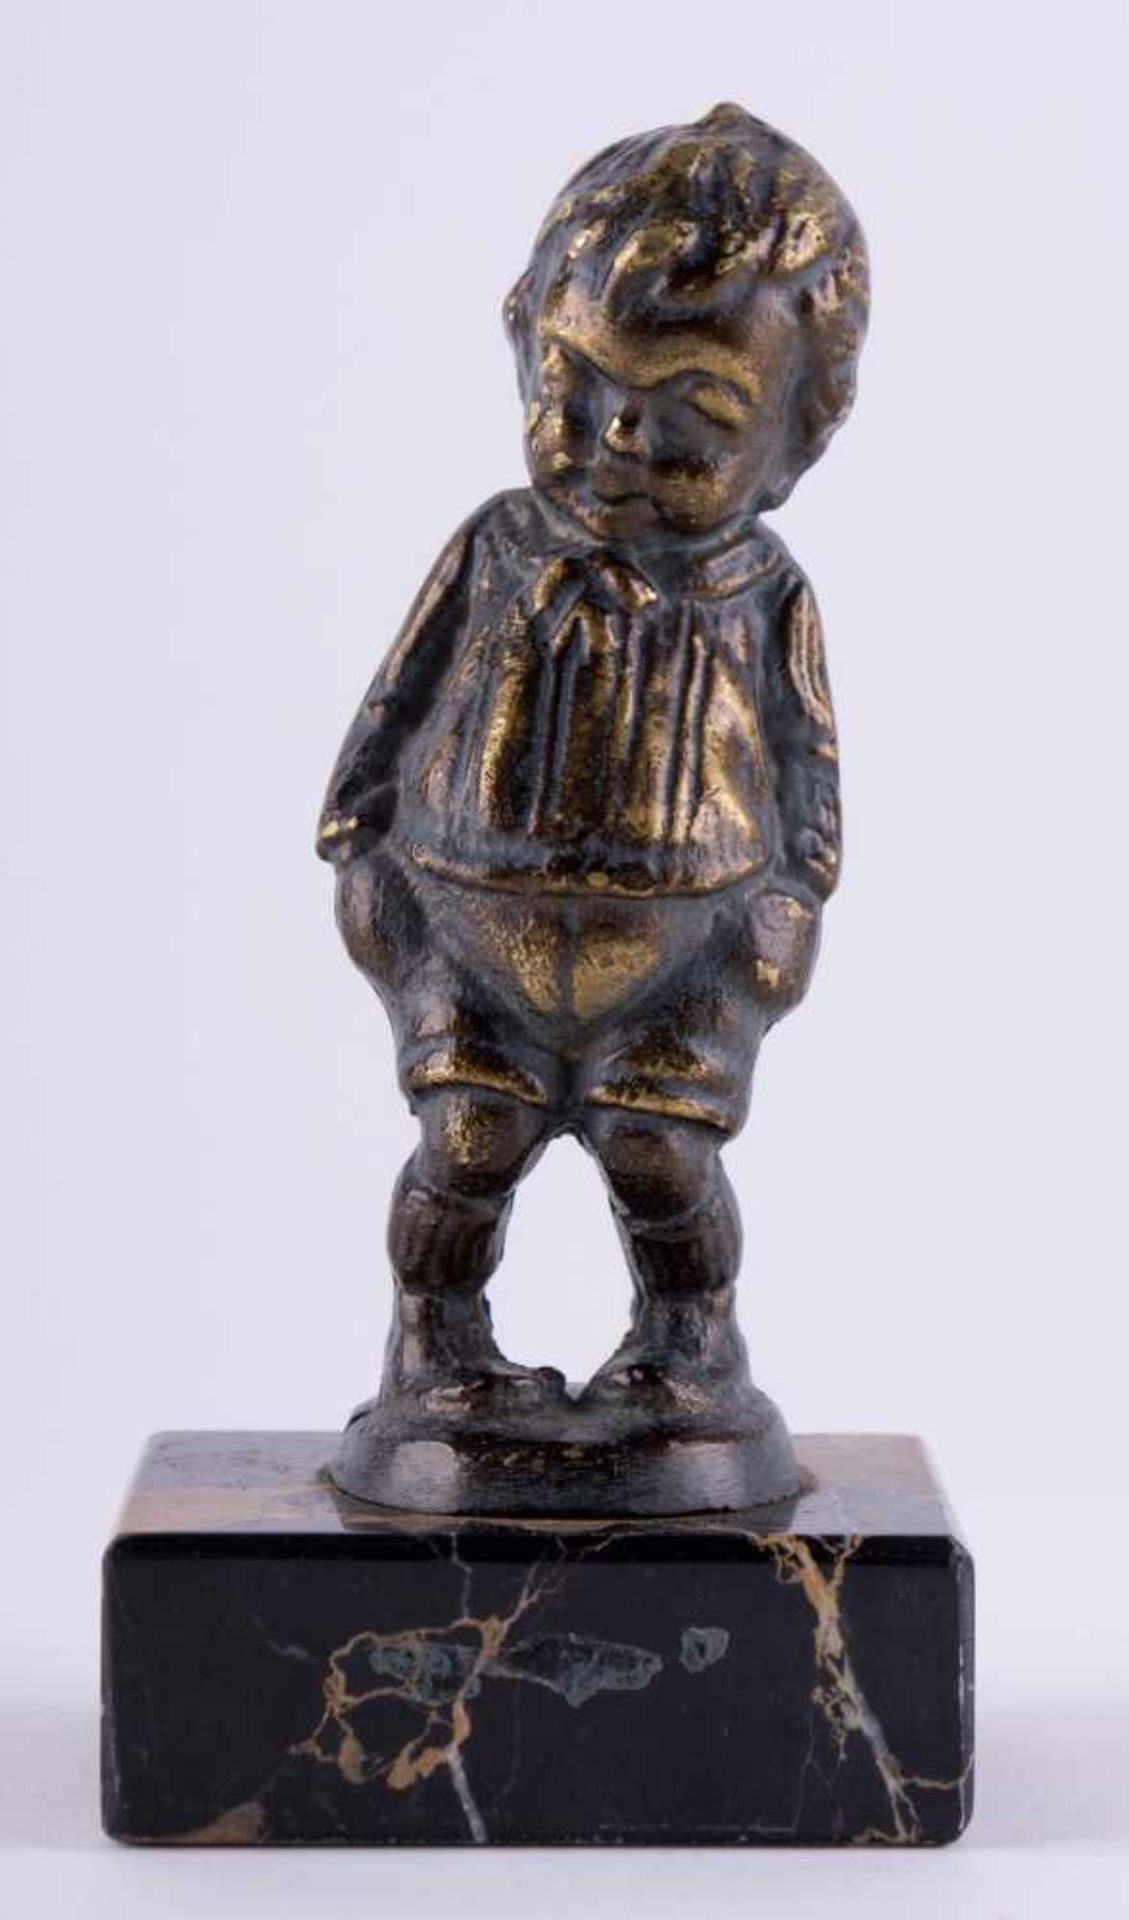 unbekannter Bildhauer des 19./20. Jhd. / Unidentified sculptor, 19th/20th century "kleiner Junge"